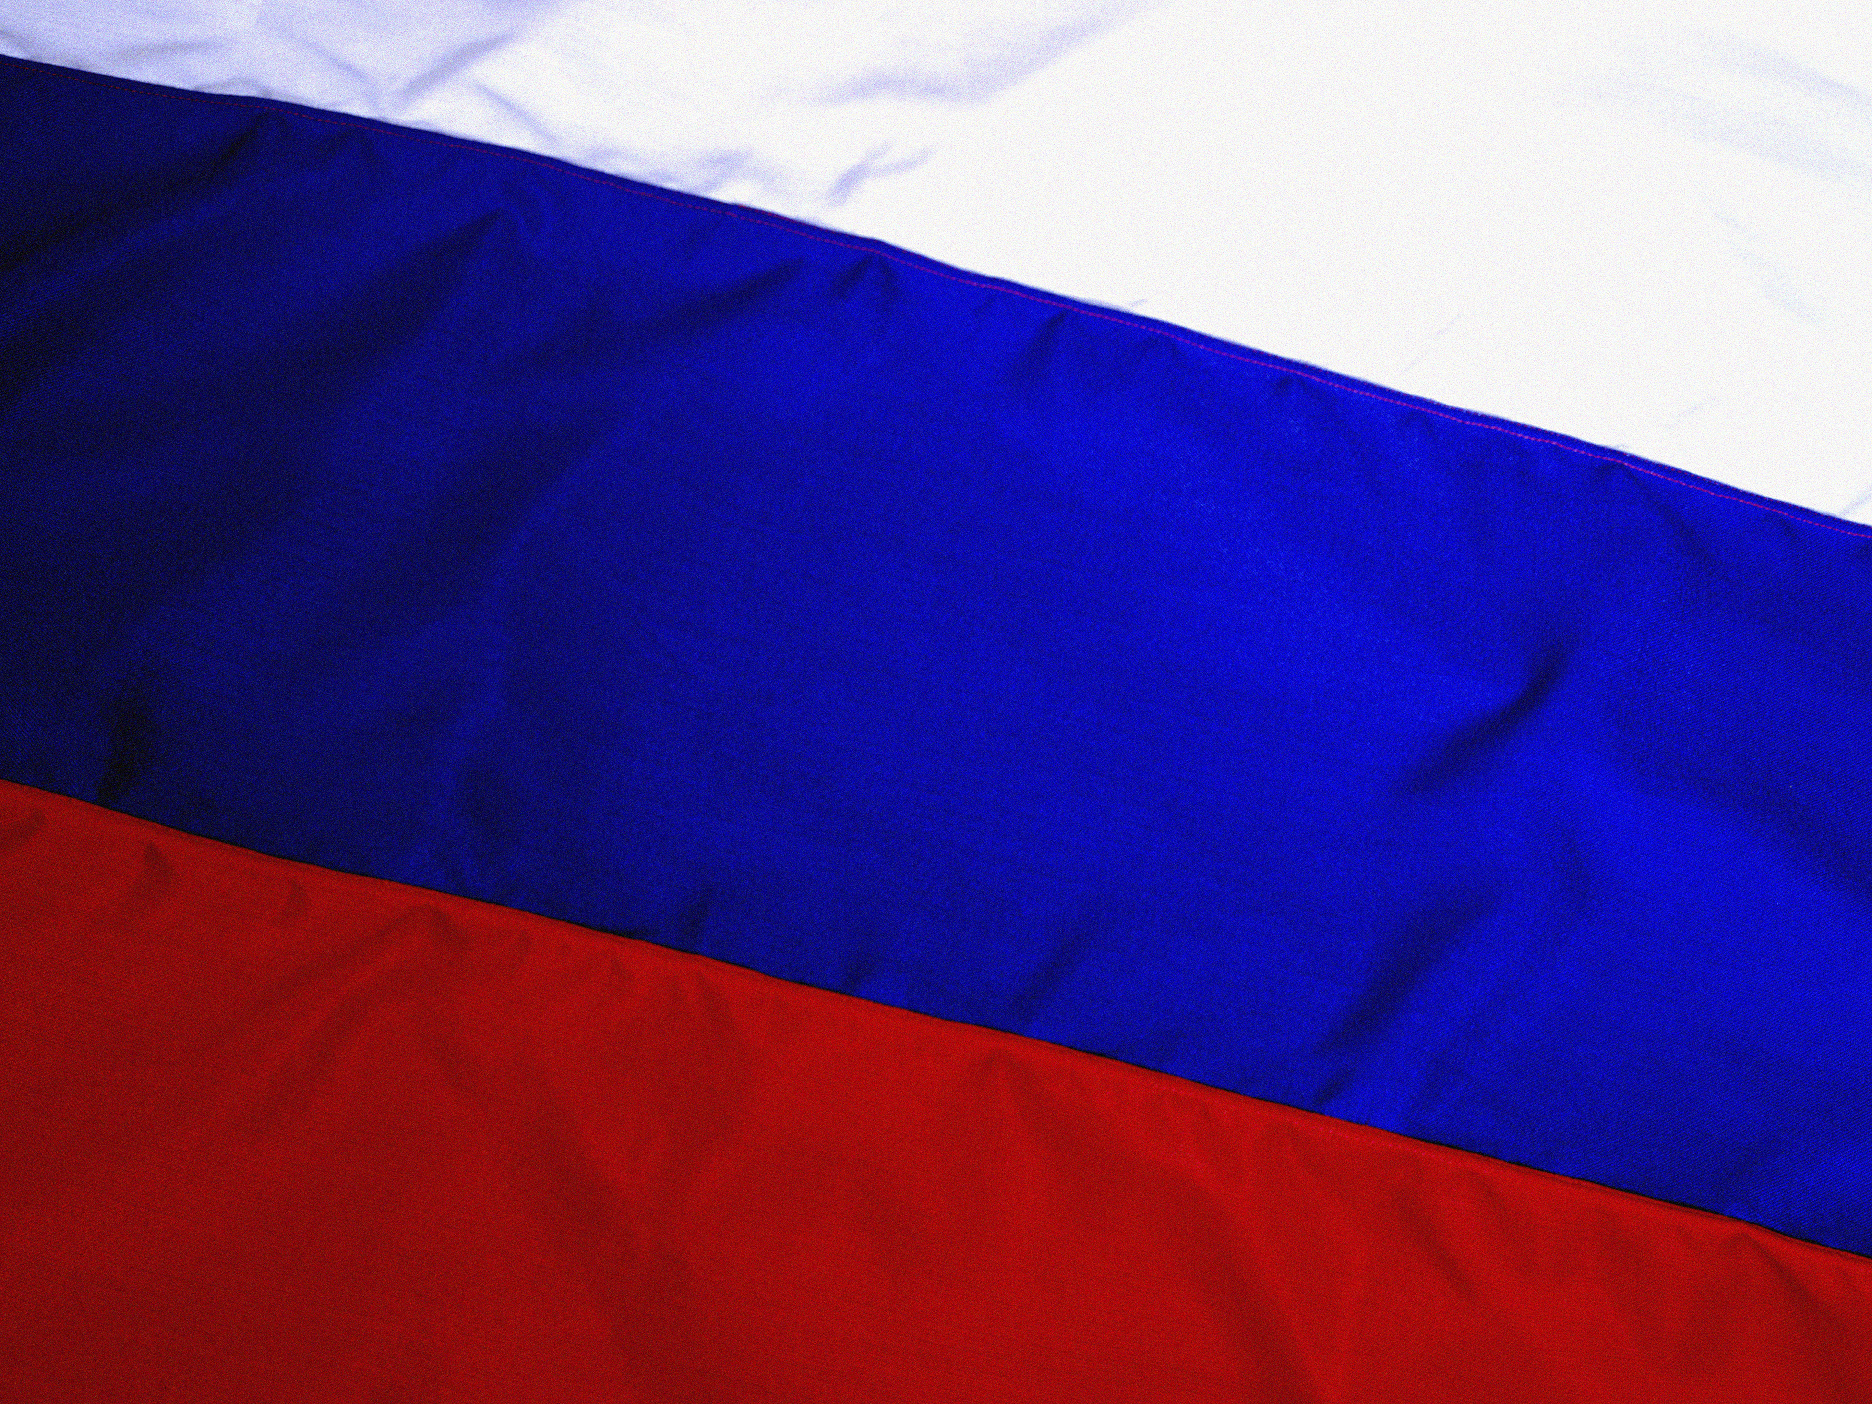 Как выглядит флаг картинка. Флаг России. Флаг Российской Федерации Триколор. Флак Русти. Феалг России.